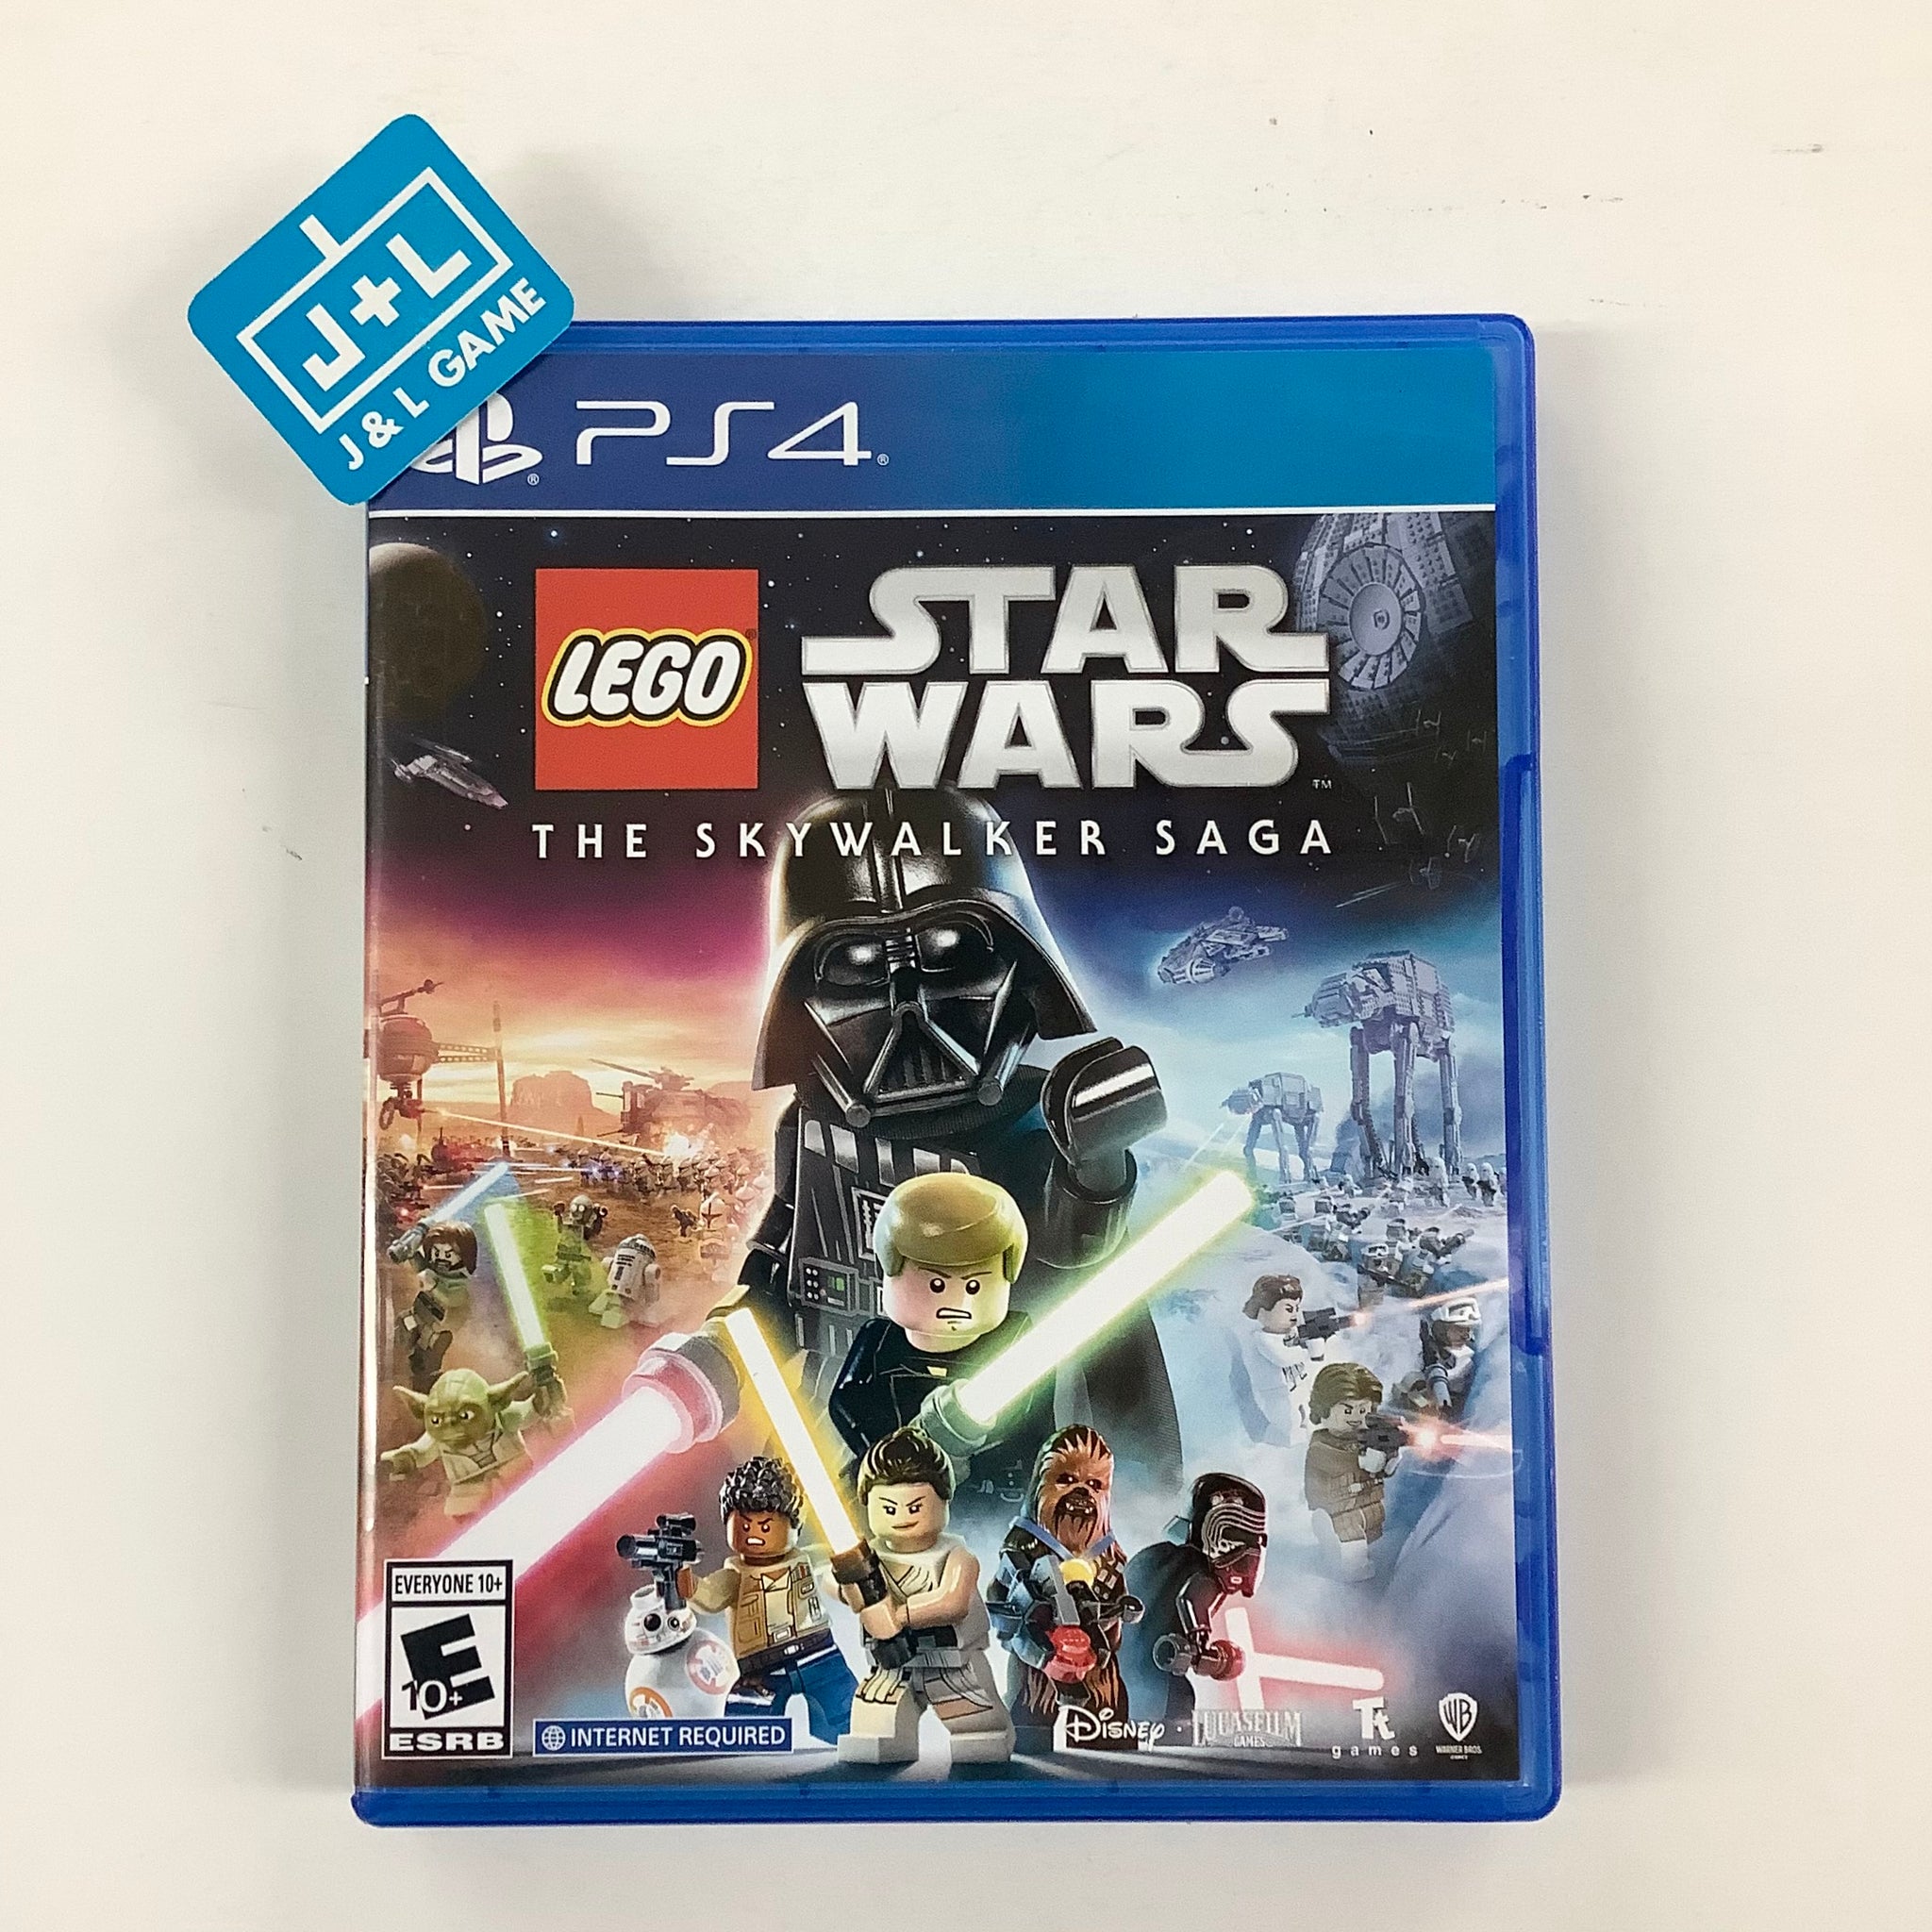 plyndringer Landmand i gang Lego Star Wars: The Skywalker Saga - (PS4) PlayStation 4 [UNBOXING] – J&L  Video Games New York City